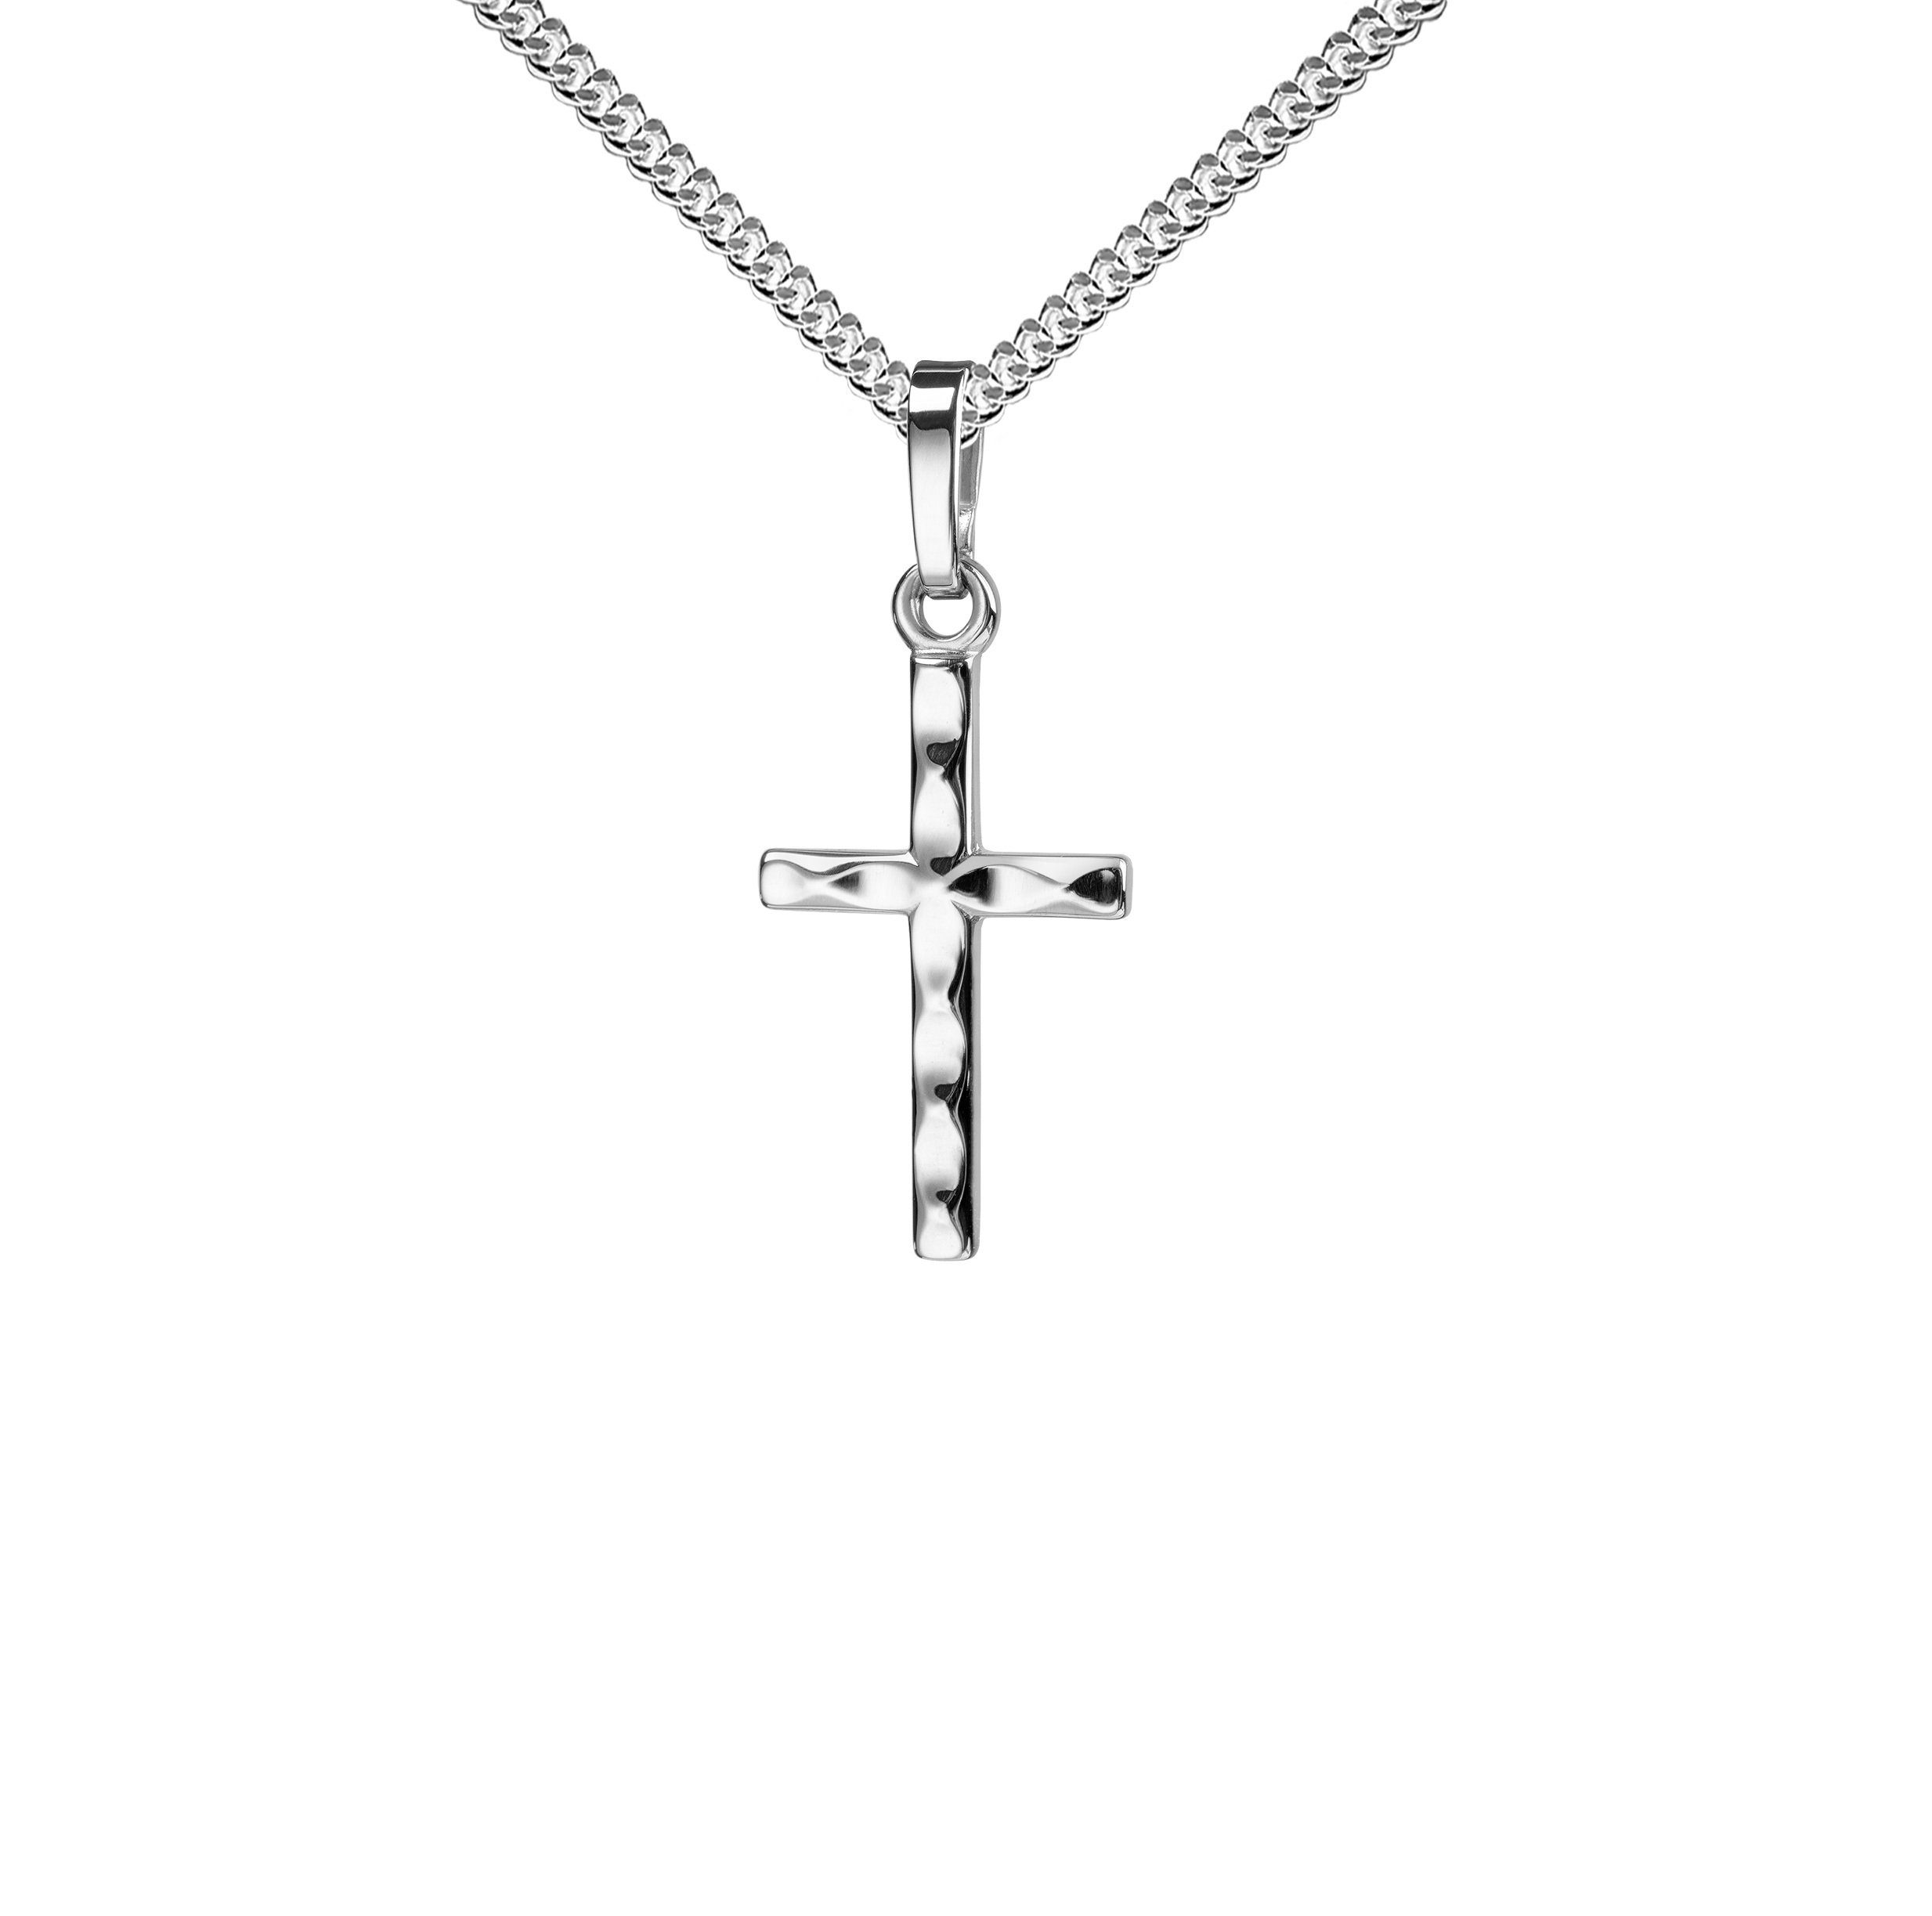 JEVELION Kreuzkette kleiner Kreuzanhänger 925 Silber - Made in Germany (Silberkreuz, für Damen und Kinder), Mit Silberkette 925 - Länge wählbar 36 - 70 cm oder ohne Kette.